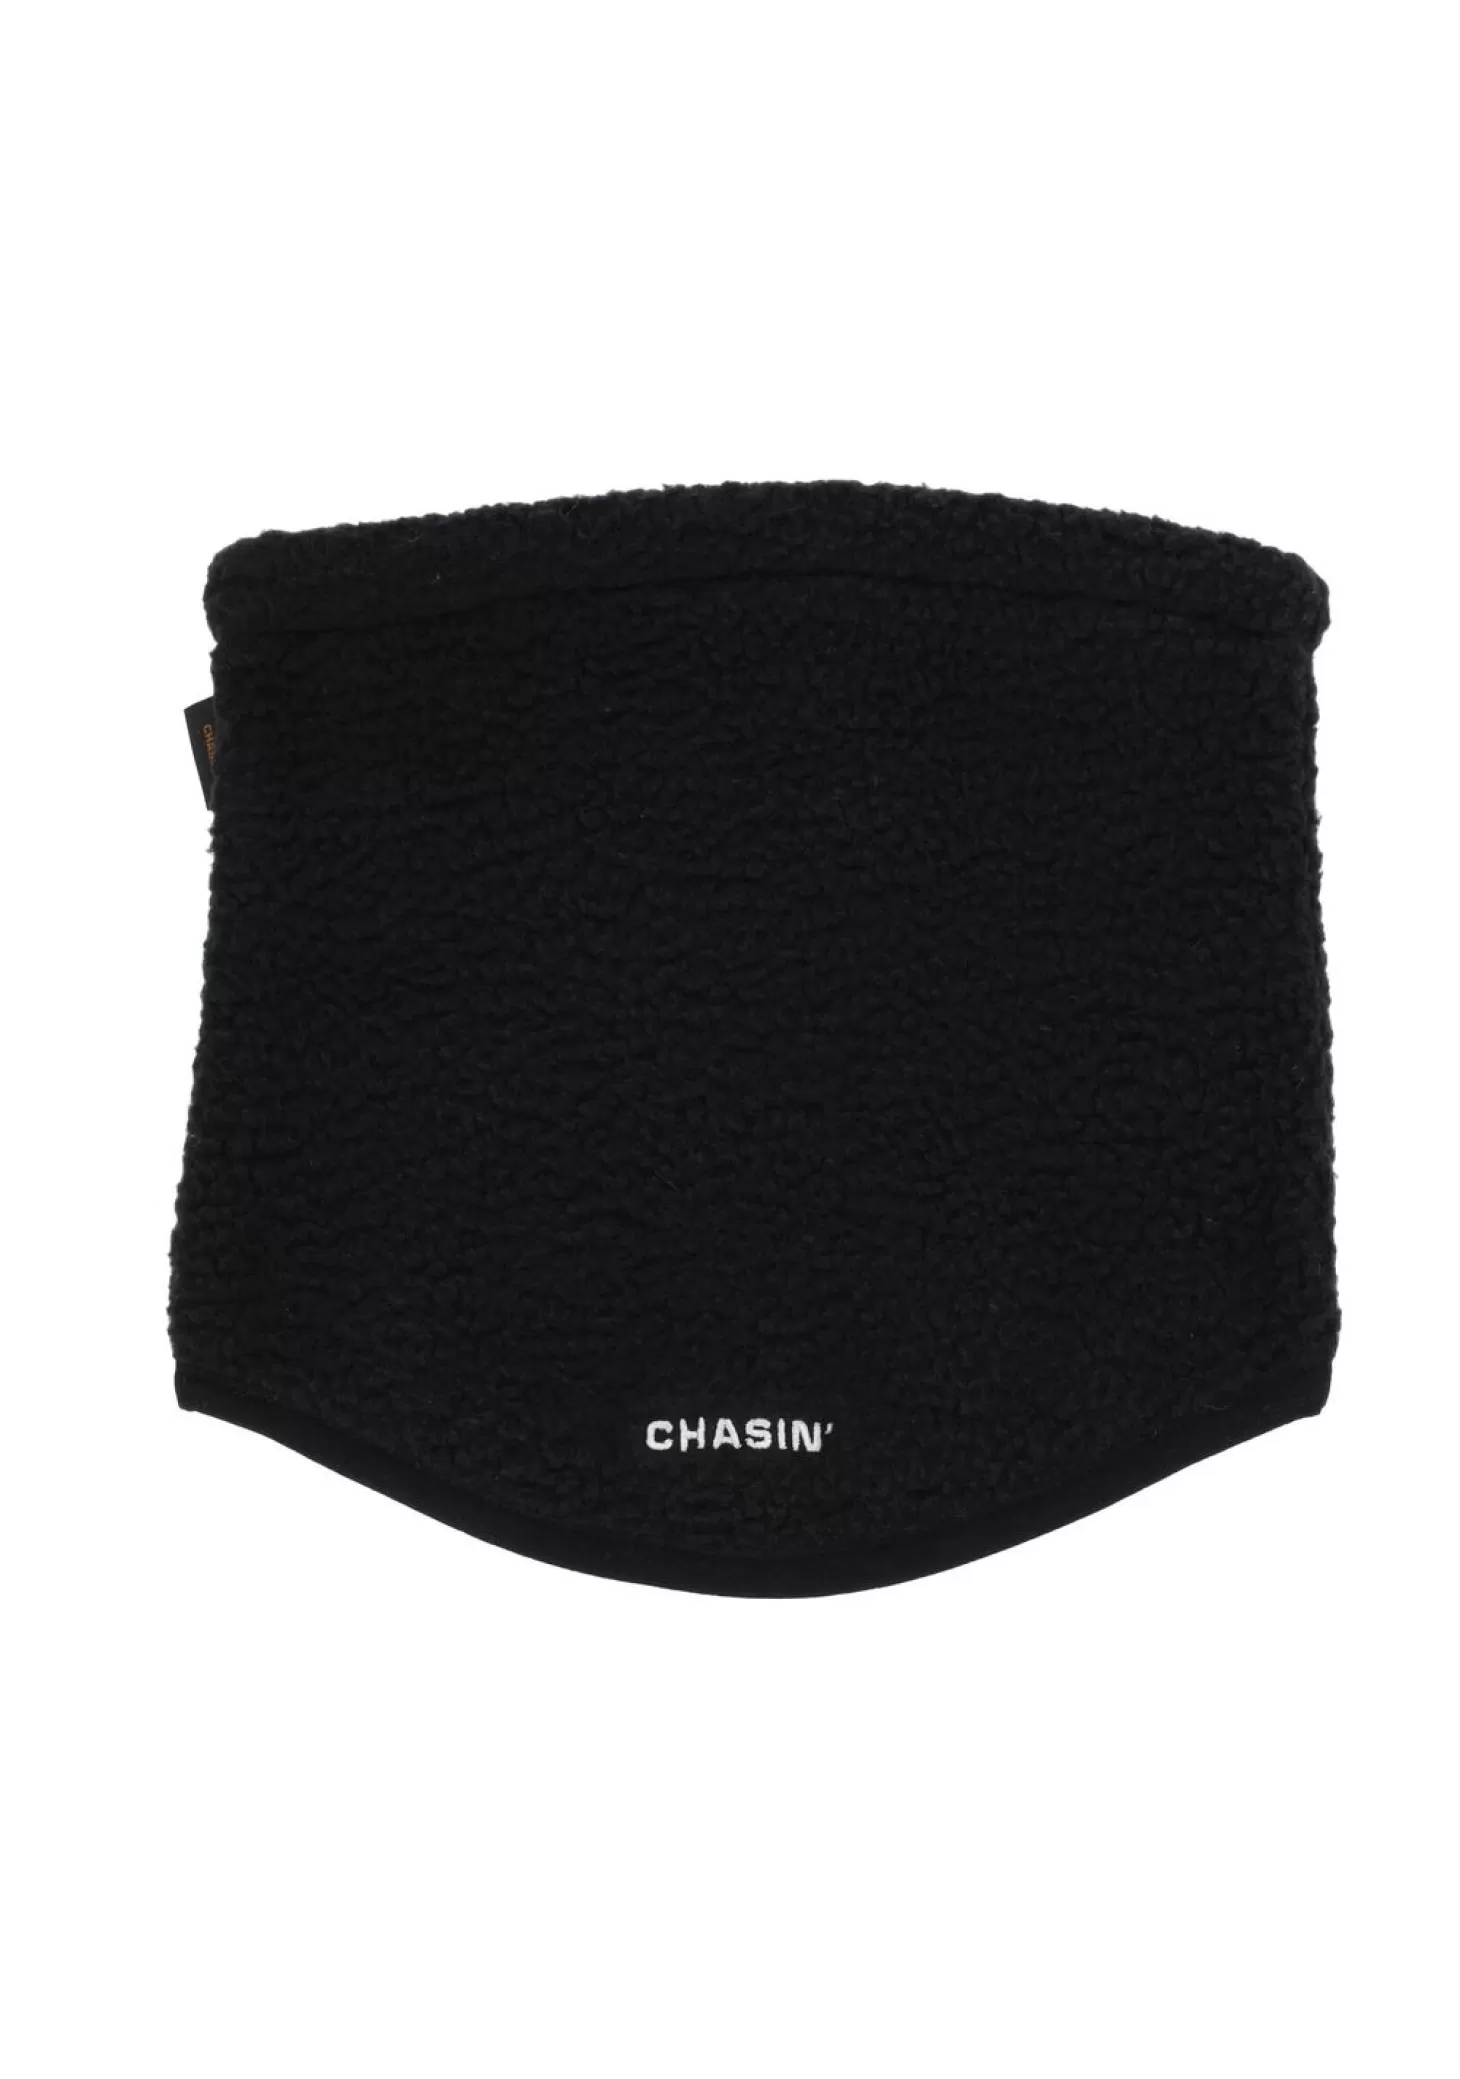 CHASIN' Scarves & Gloves*Chamonix Scarf Scarves - Chasin' EN